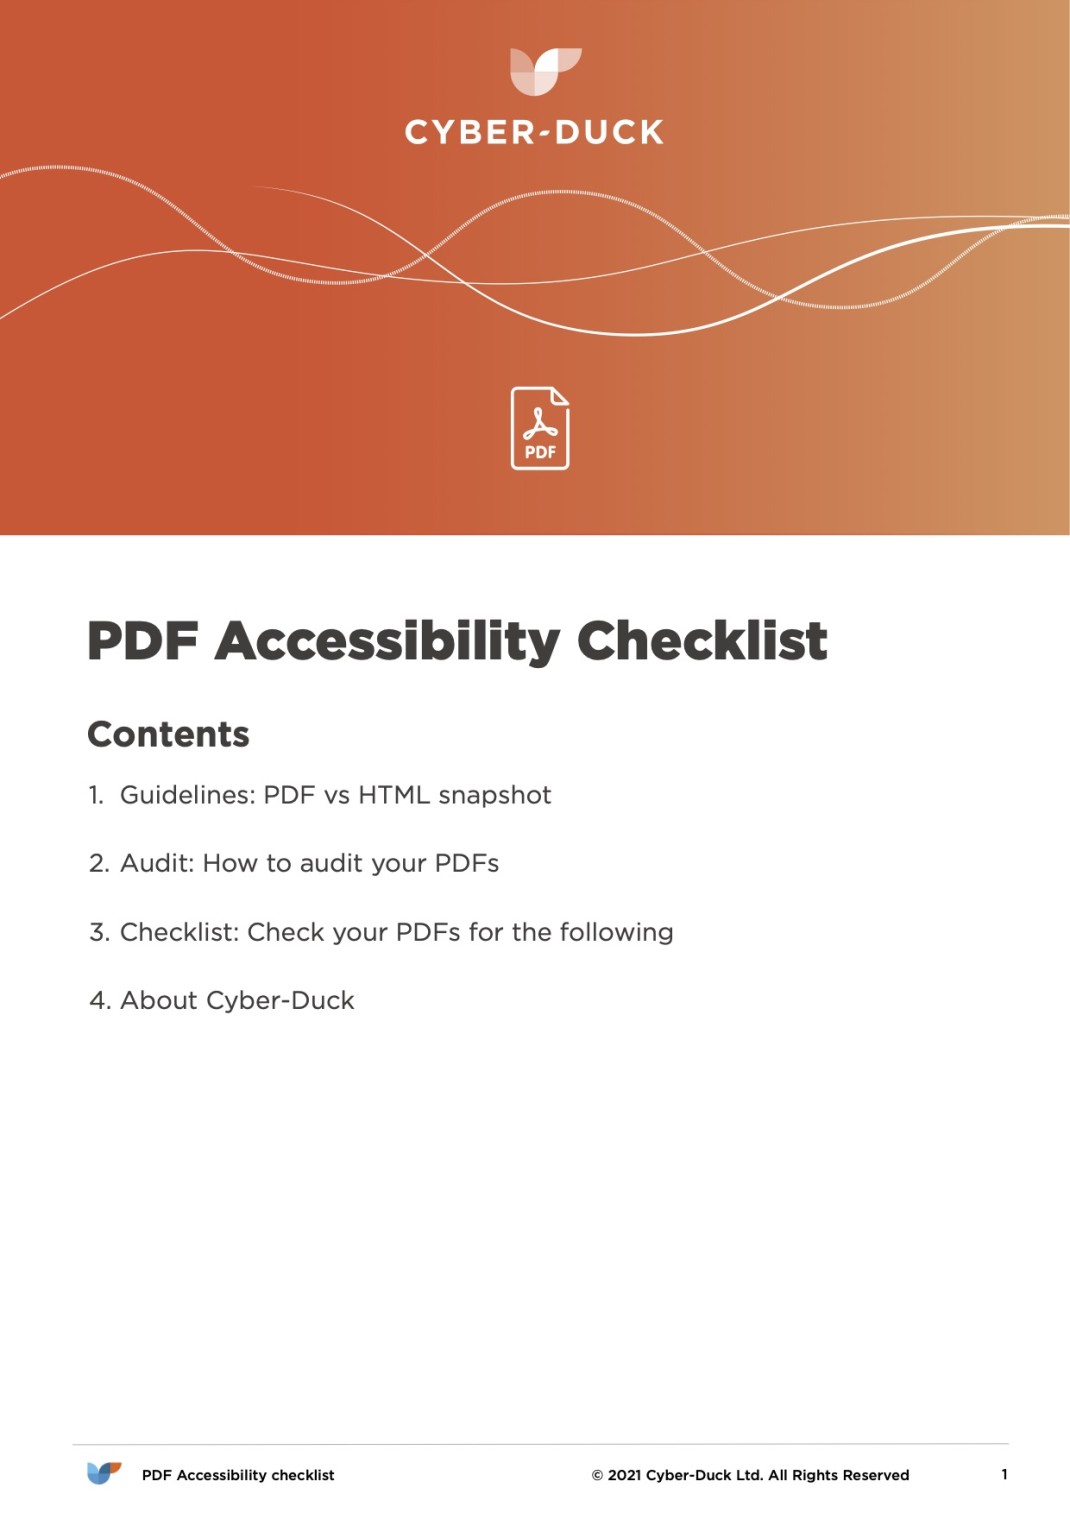 PDF Accessibility Checklist image 1